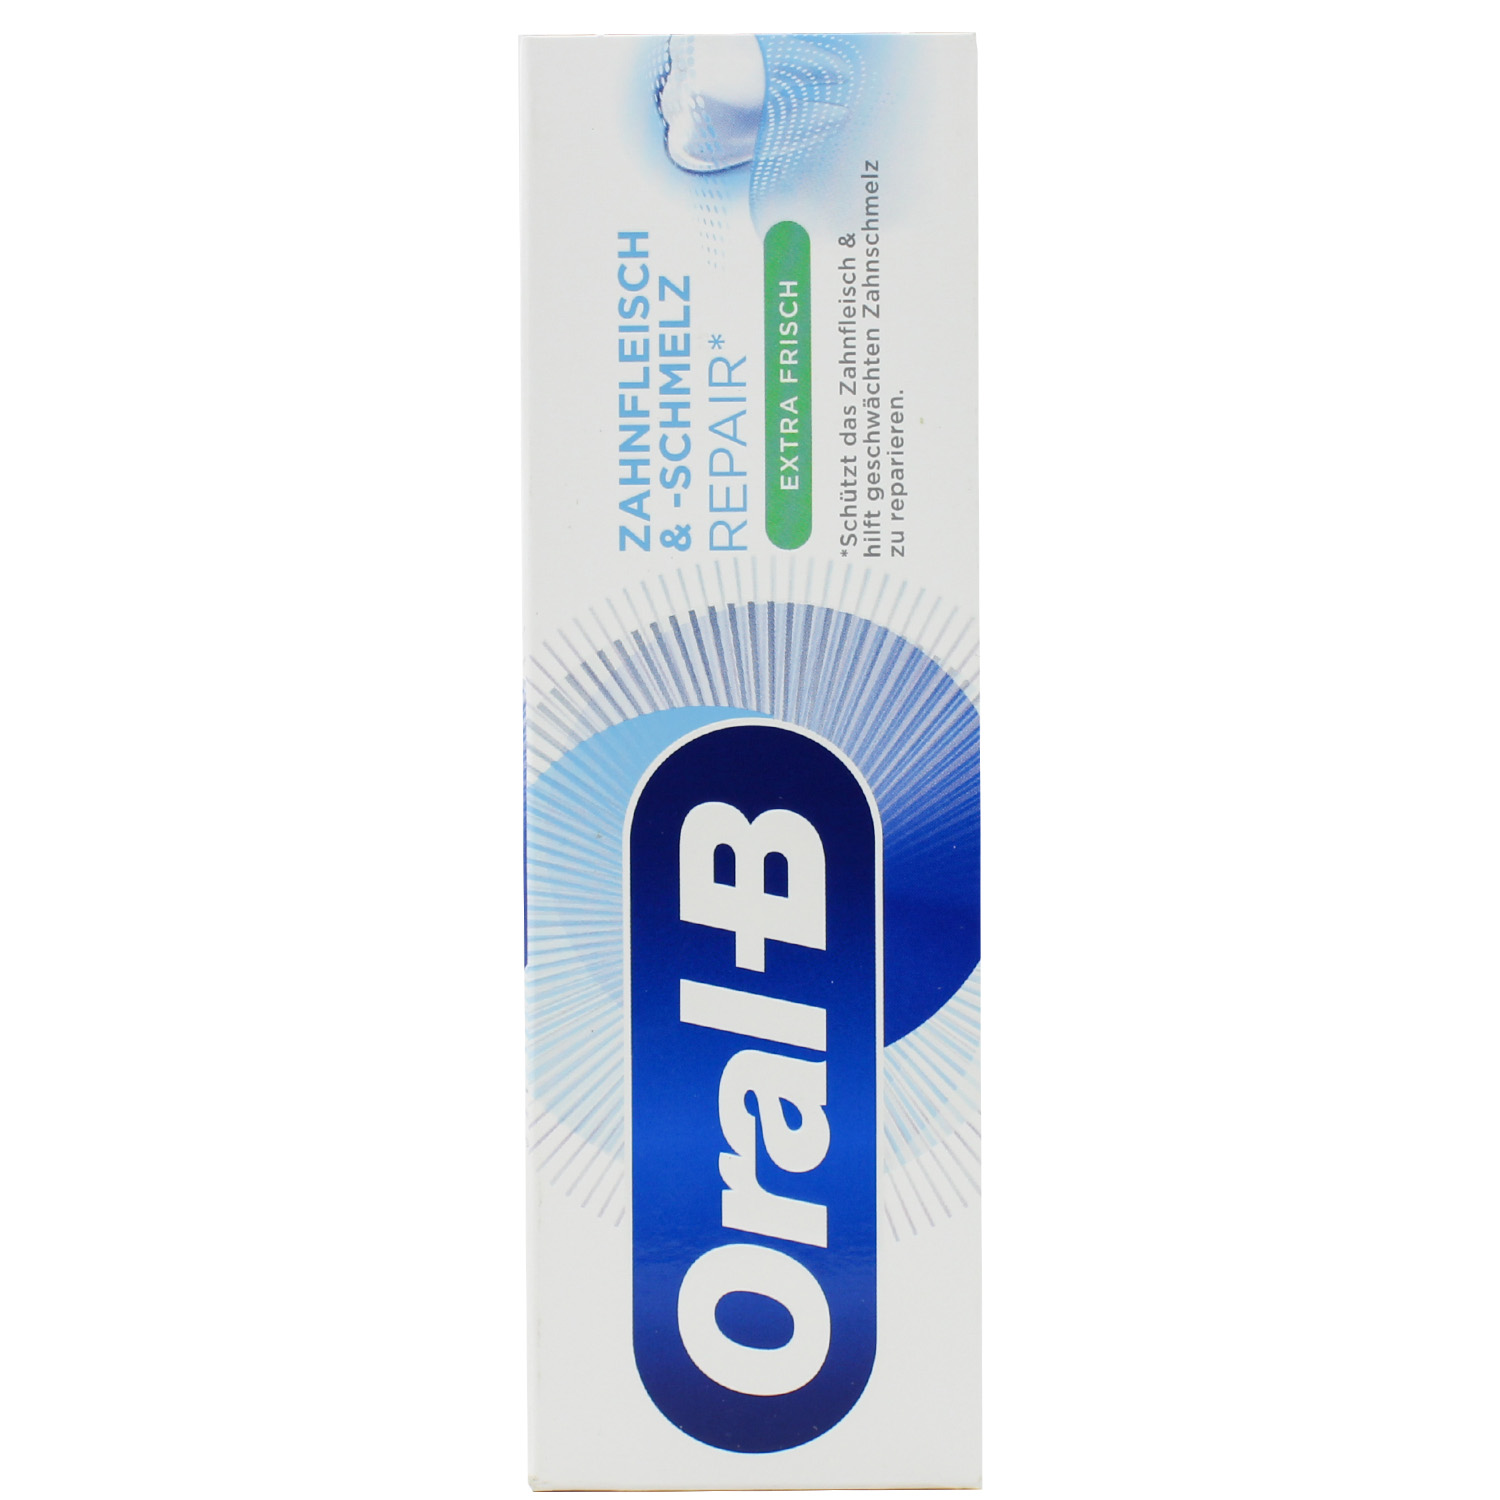 Oral-B Zahnfleisch & -schmelz Repair Extra Frisch Zahncreme 75ml